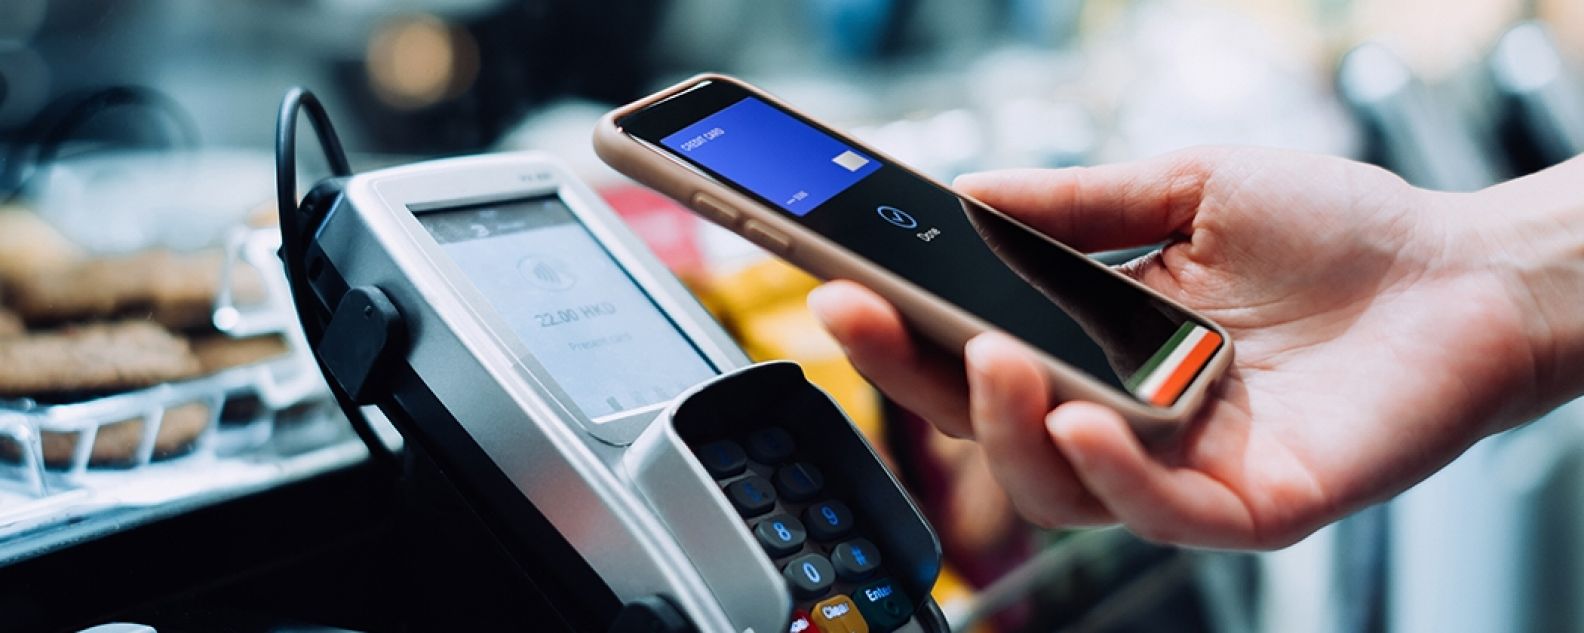 Propriétaire d'une boutique souriant utilisant une tablette graphique pour traiter une transaction par carte de crédit avec un client